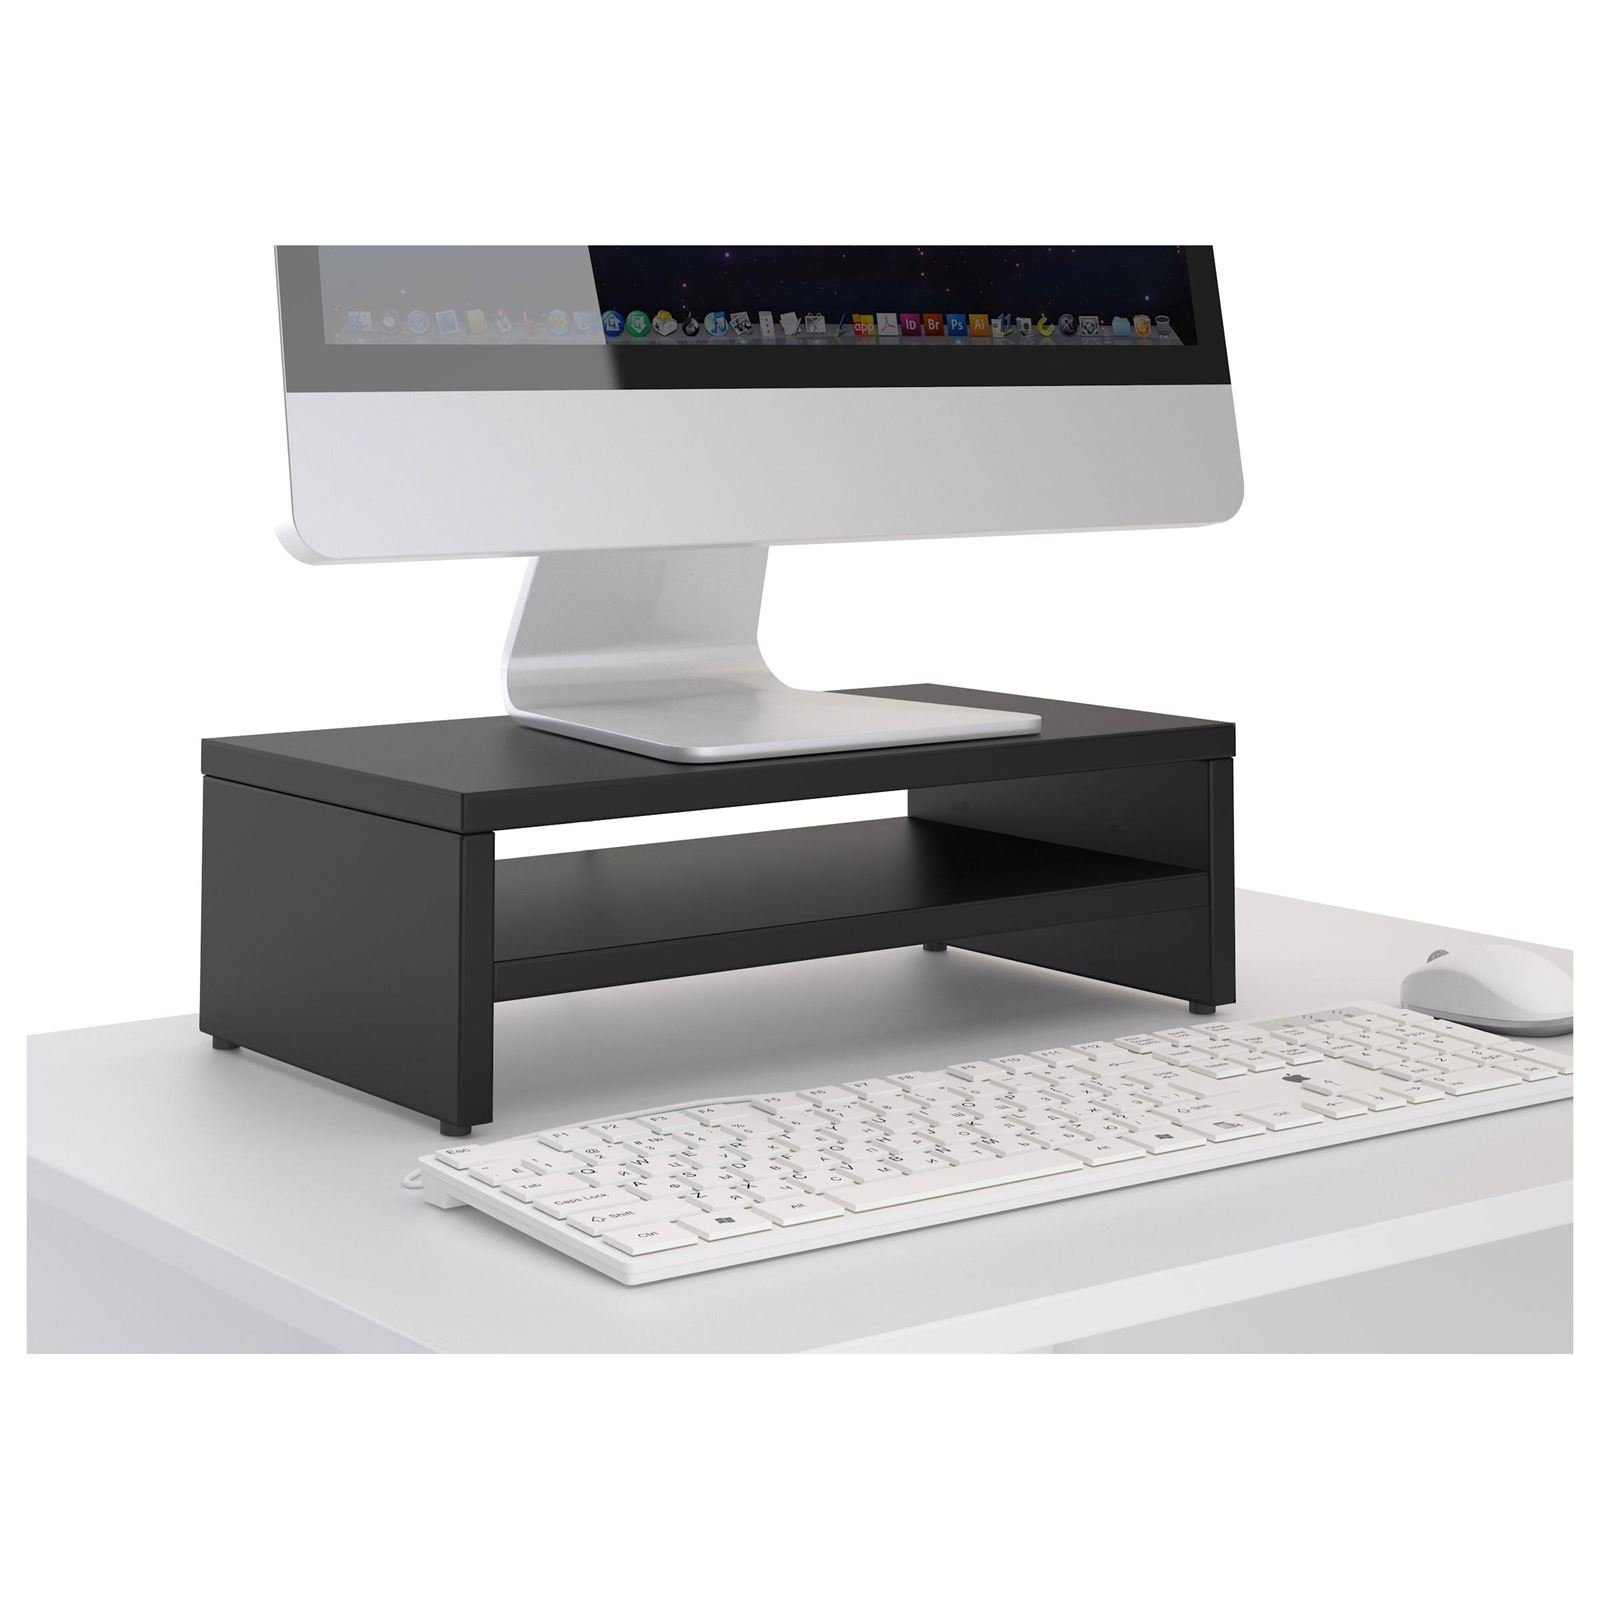 CARO-Möbel inkl. Schreibtischaufsatz schwarz SUBIDA, Ablagefach Monitorständer Monitorerhöhung Bildschirmaufsatz